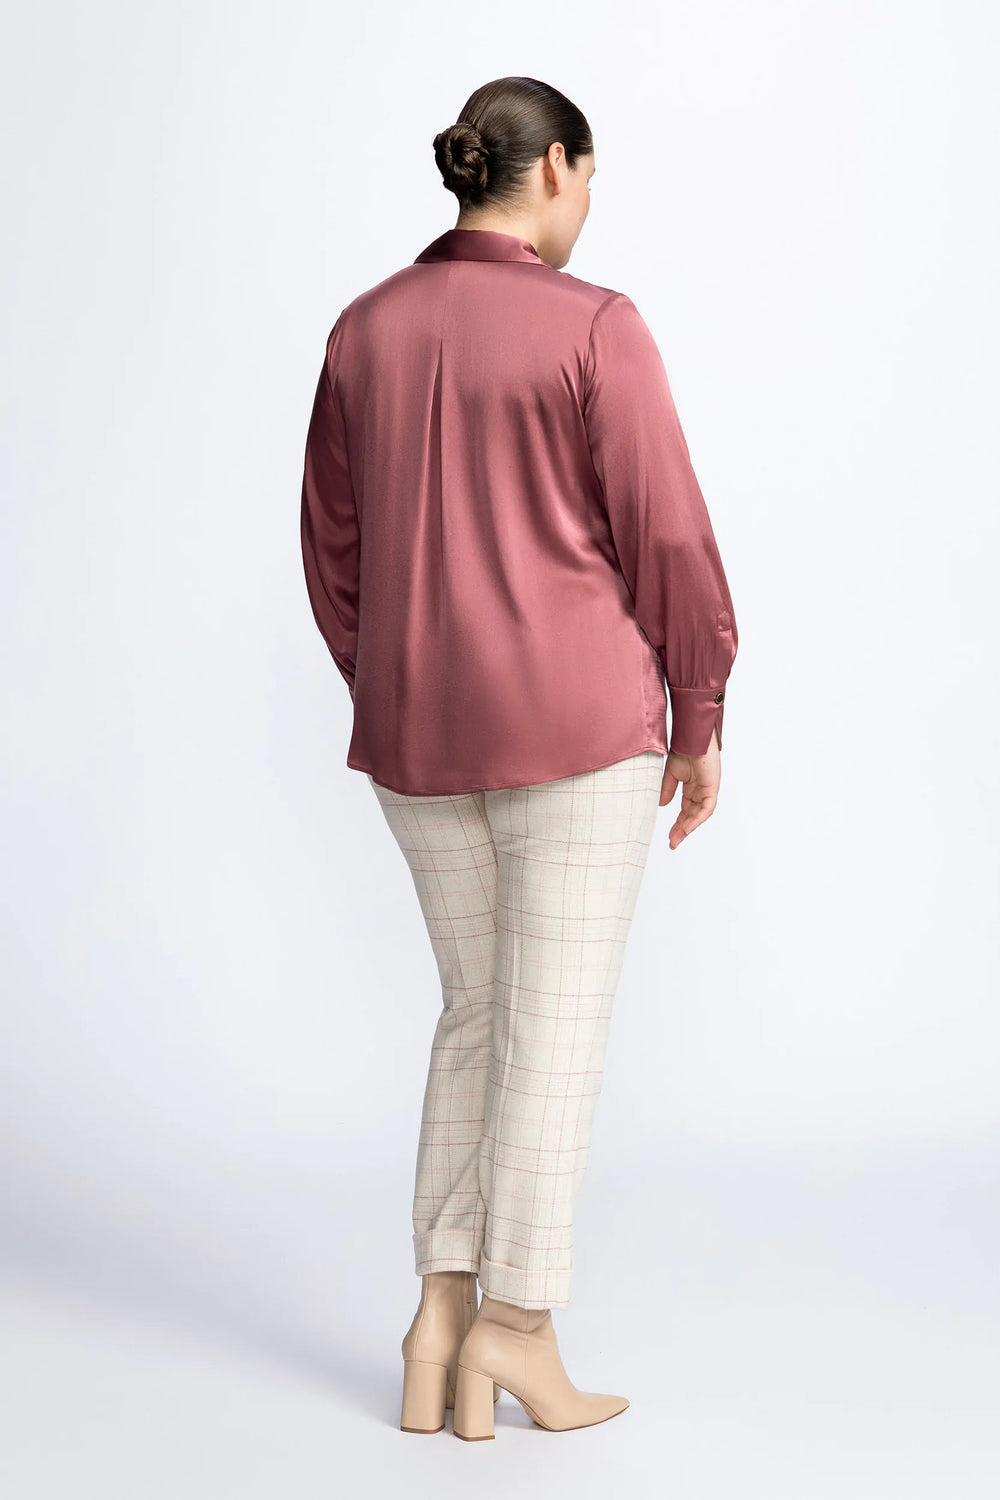 berry zijde blouse - xandres - hint-berry - grote maten - dameskleding - kledingwinkel - herent - leuven